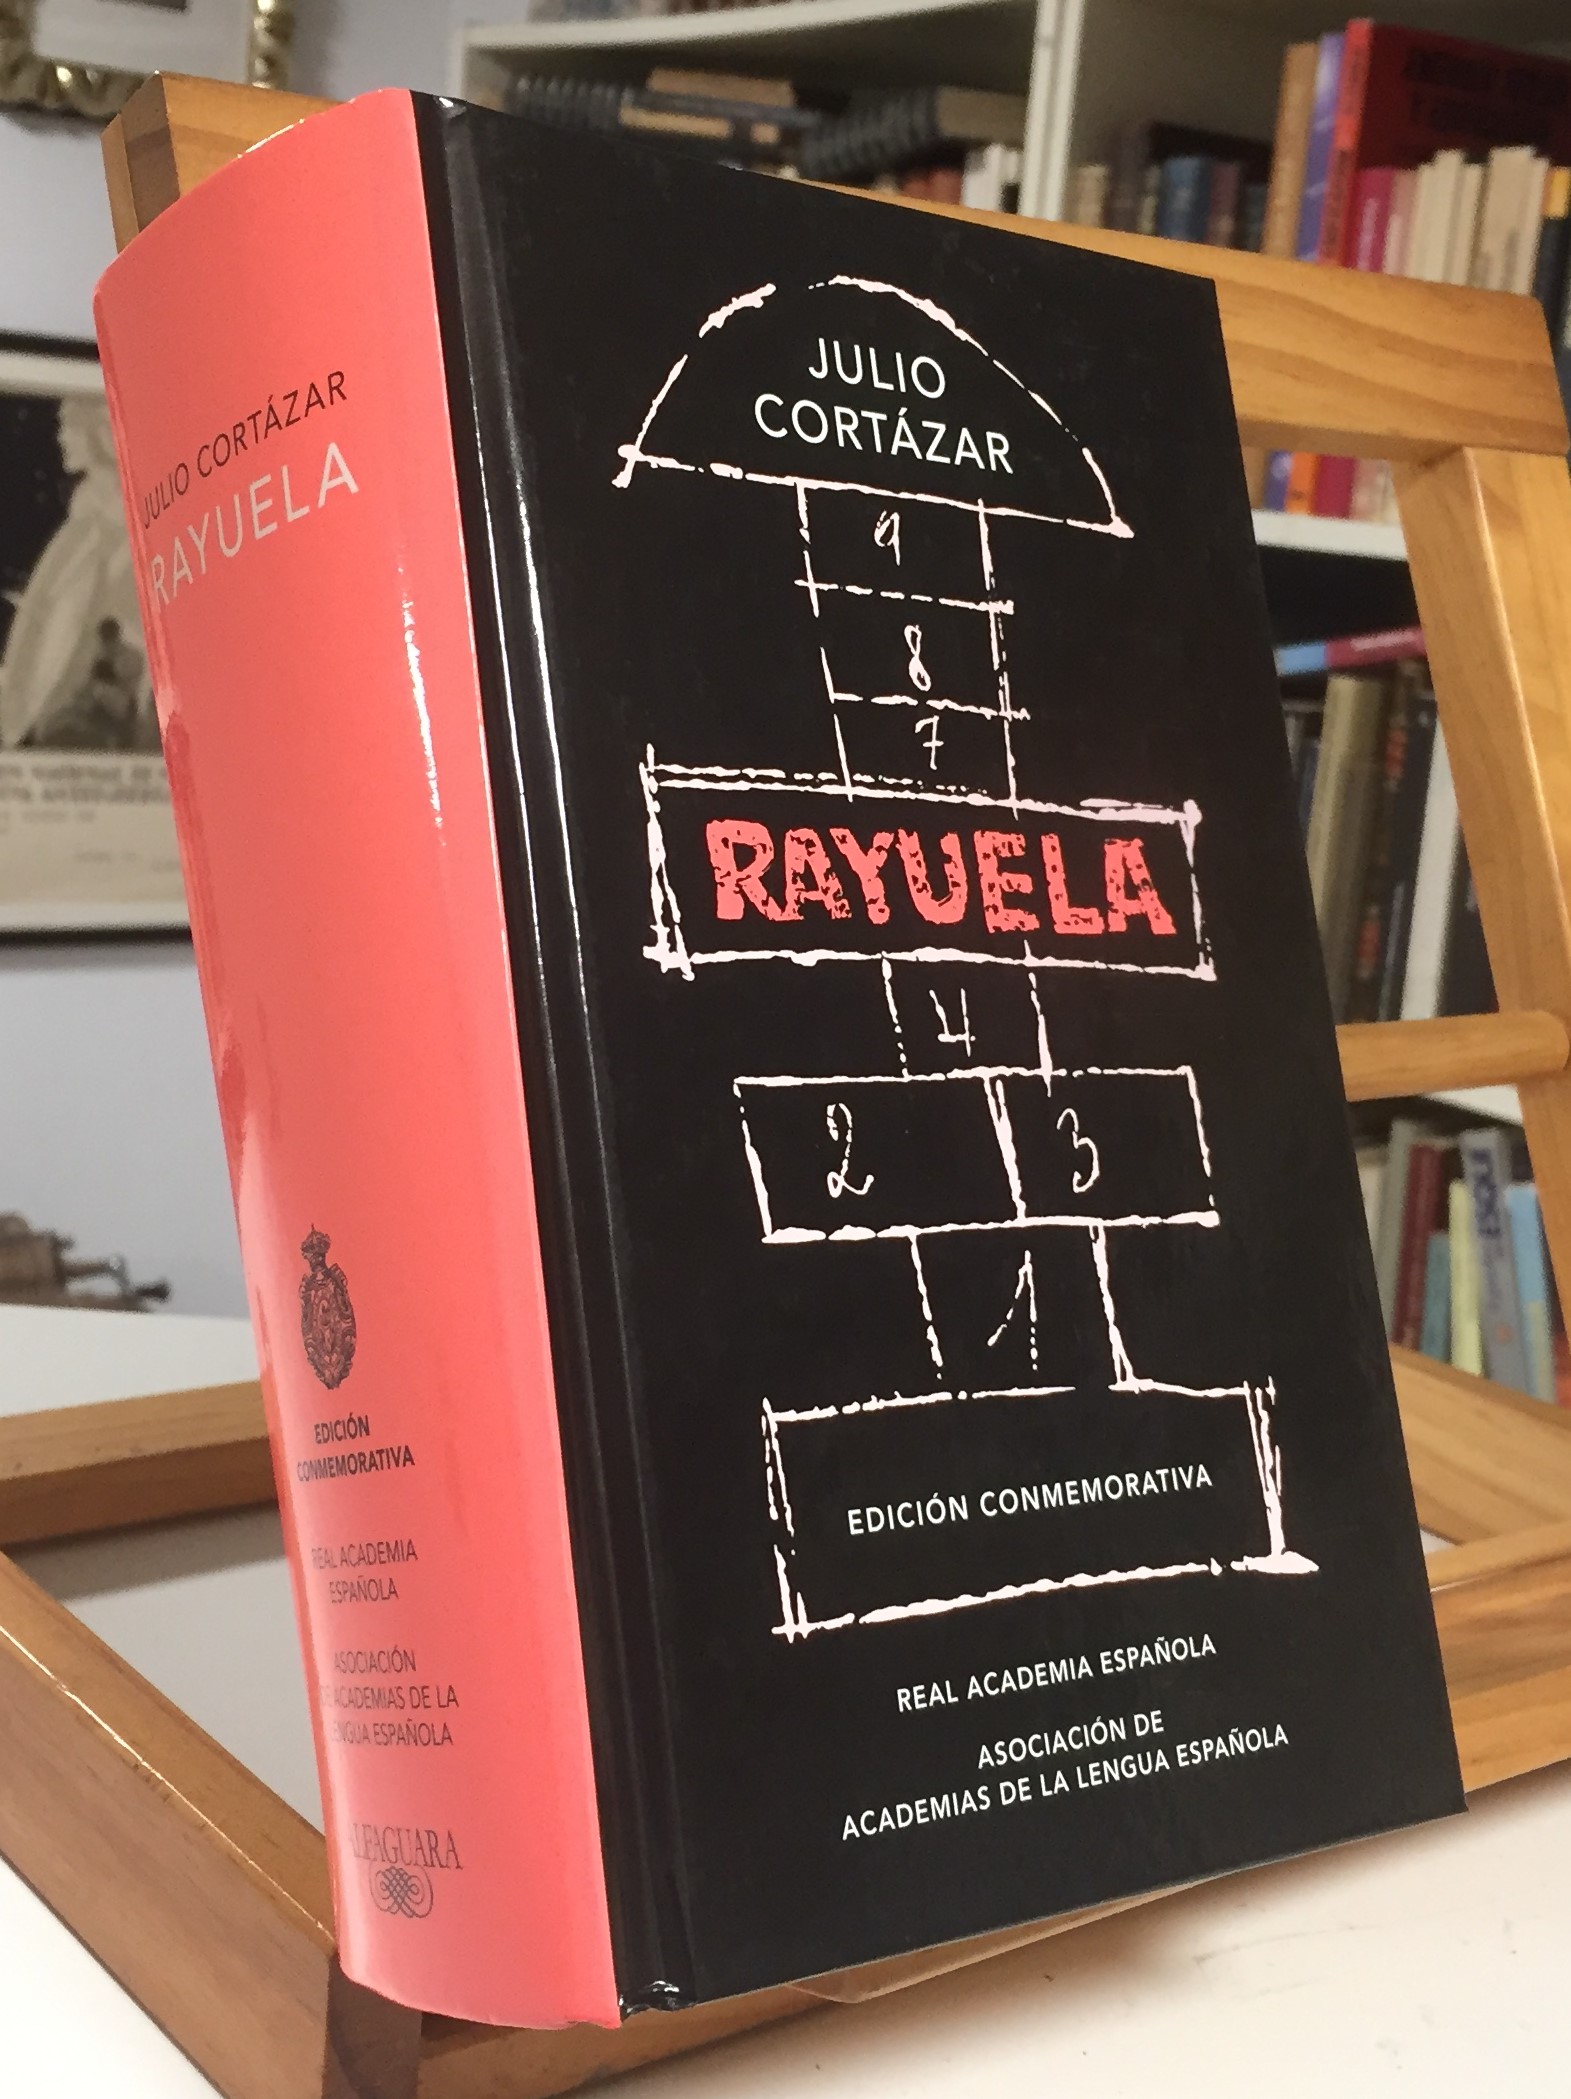 Julio Cortázar's Rayuela Special Edition